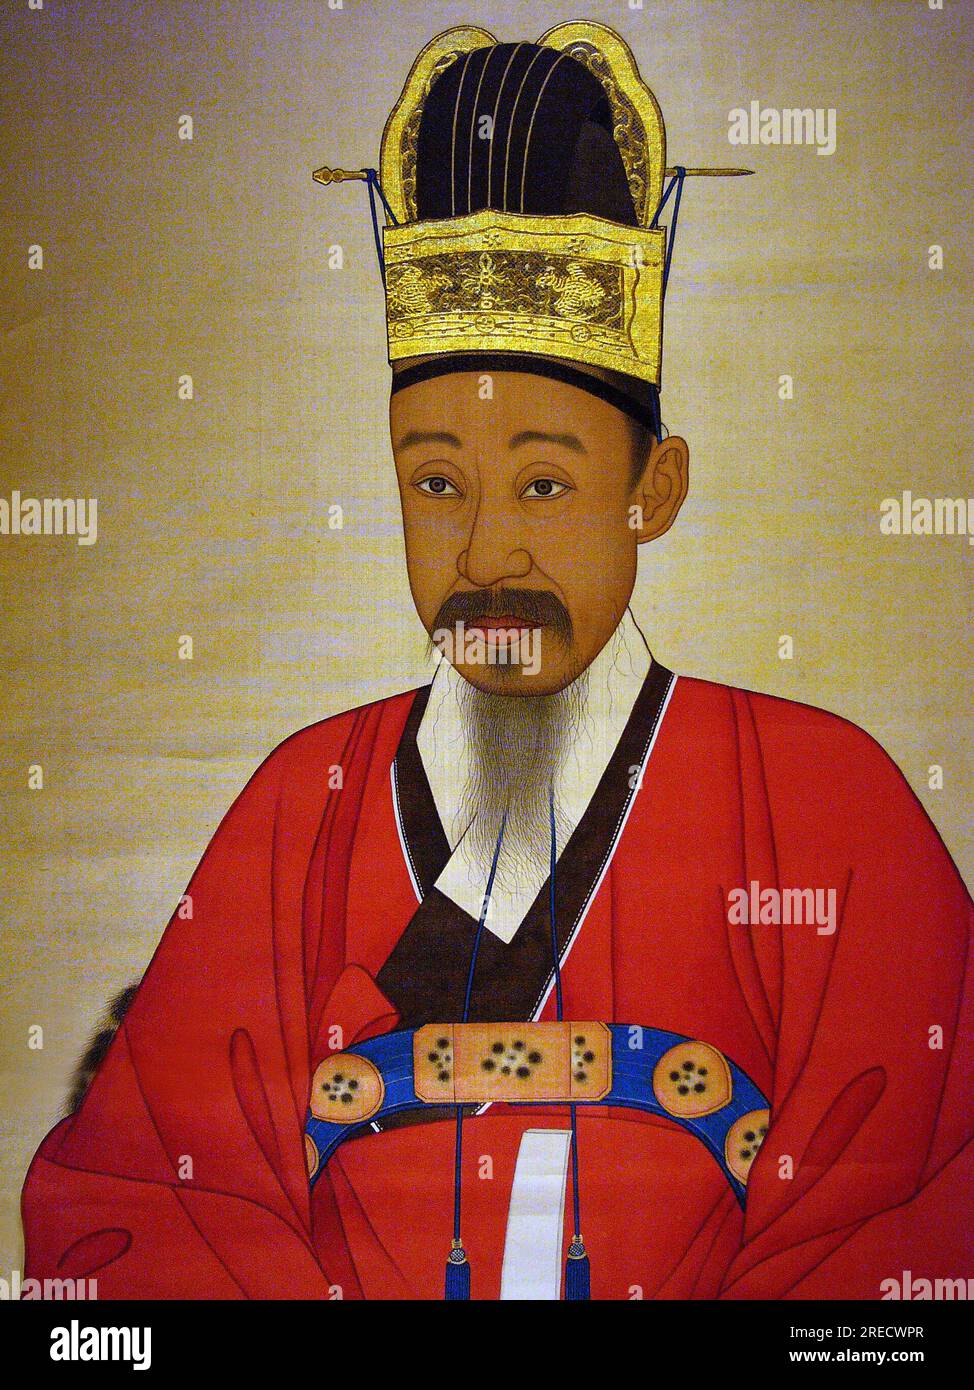 Portrait de Yi Haeung (ou 'Shibaek'), (1820-1898) Grand Prince, peinture sur soie sur panneau anonyme, XIXe siecle sous la periode Joseon, Coree. Photographie, Musee National de Seoul, Republique de Coree Stock Photo